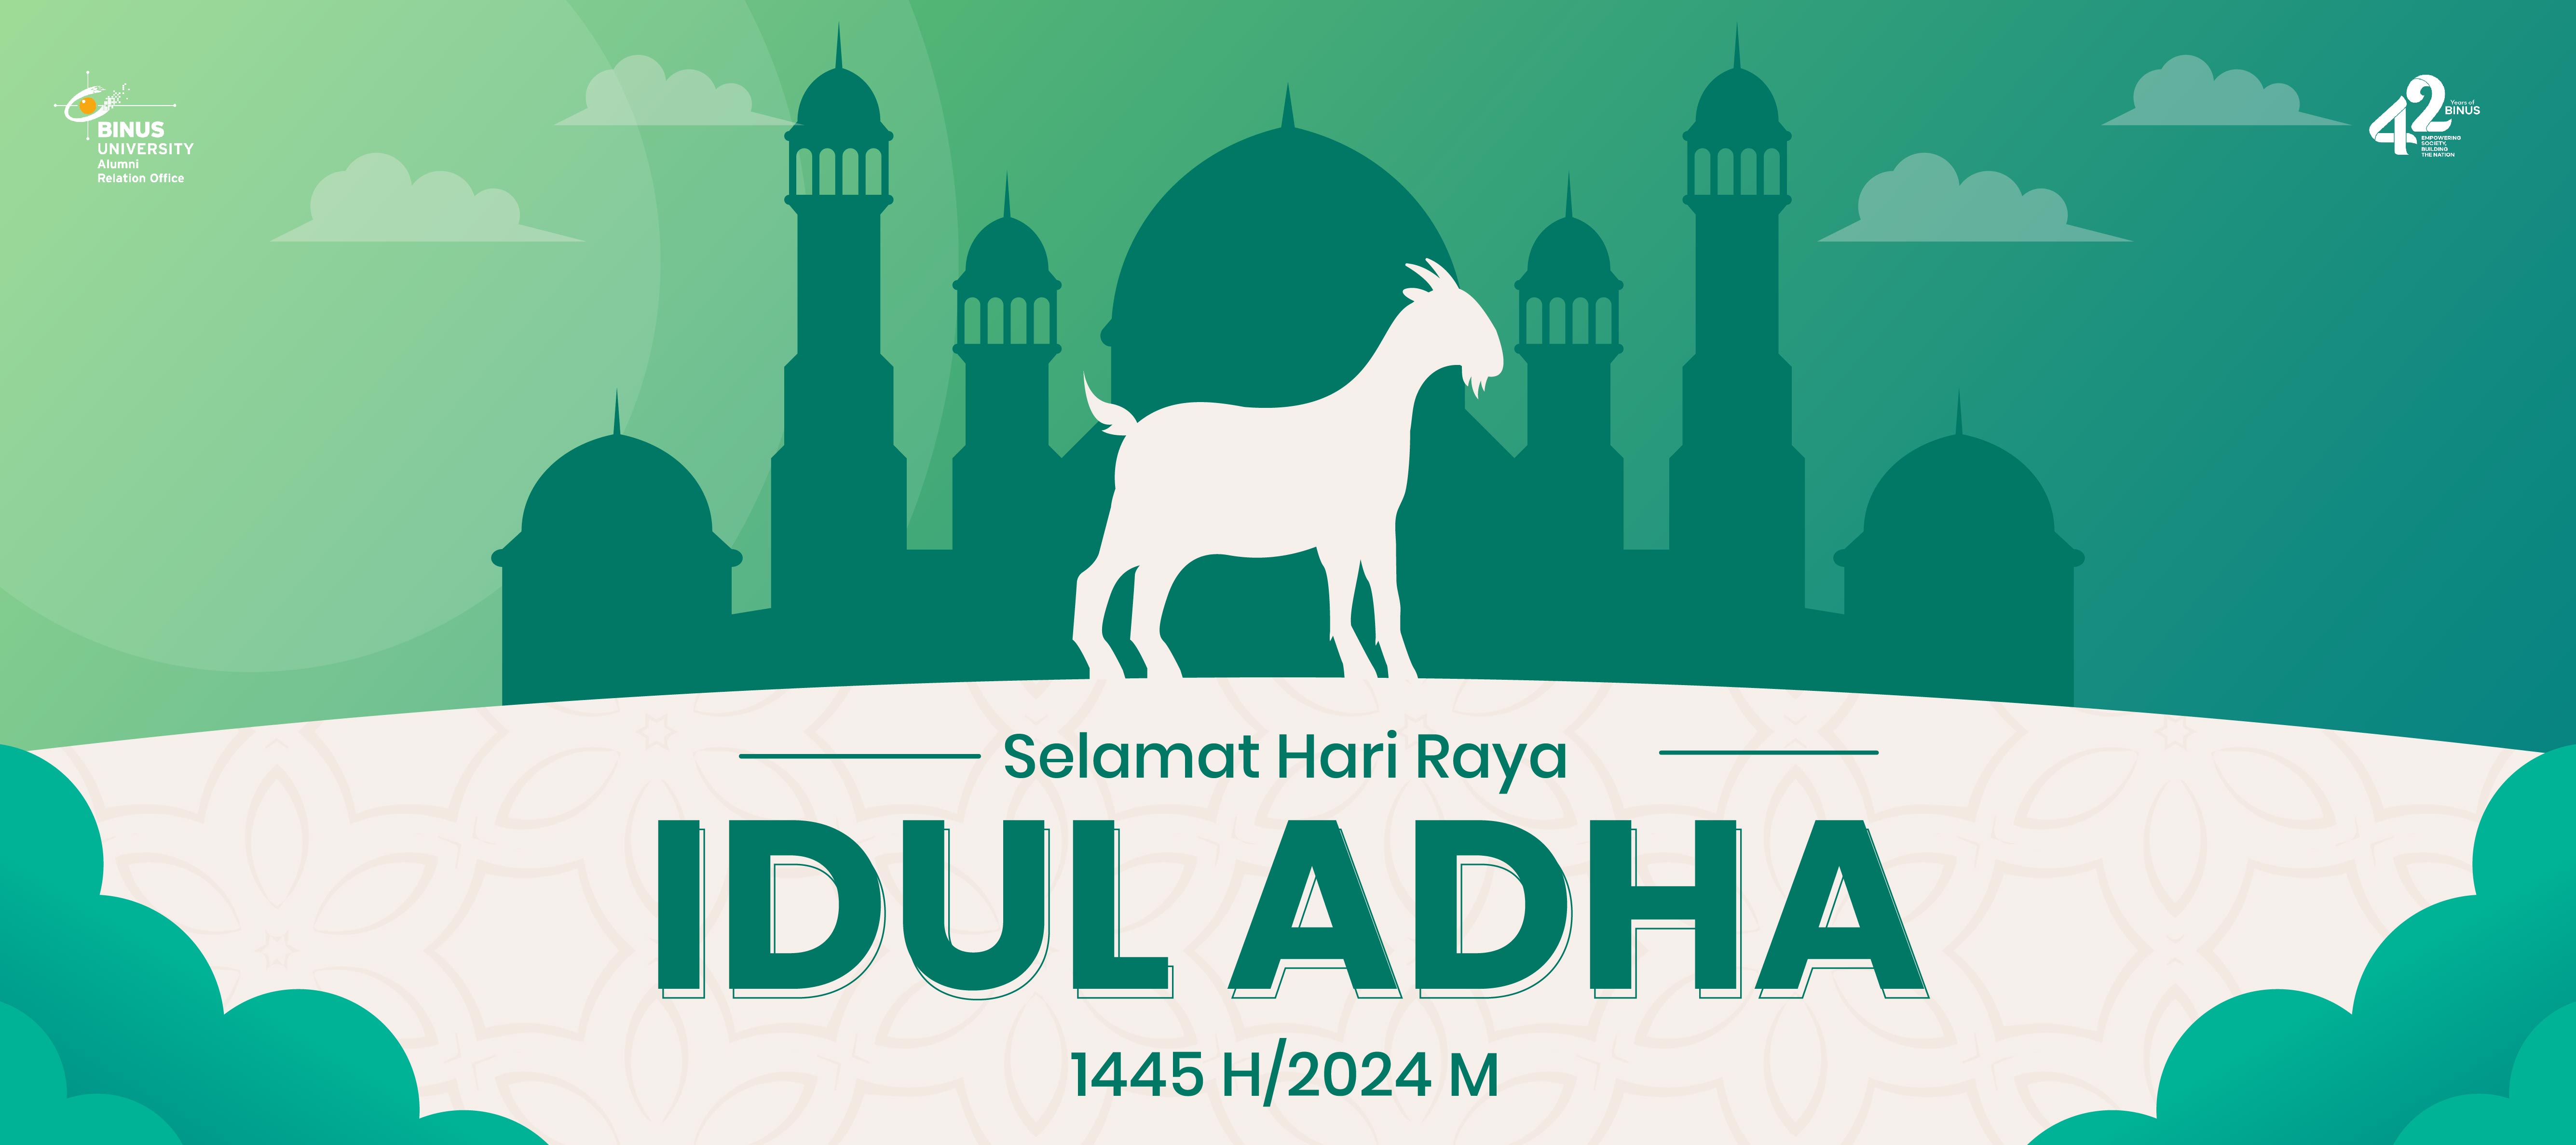 Selamat Hari Raya Idul Adha 1445 H / 2024 M kepada seluruh alumni Binus!